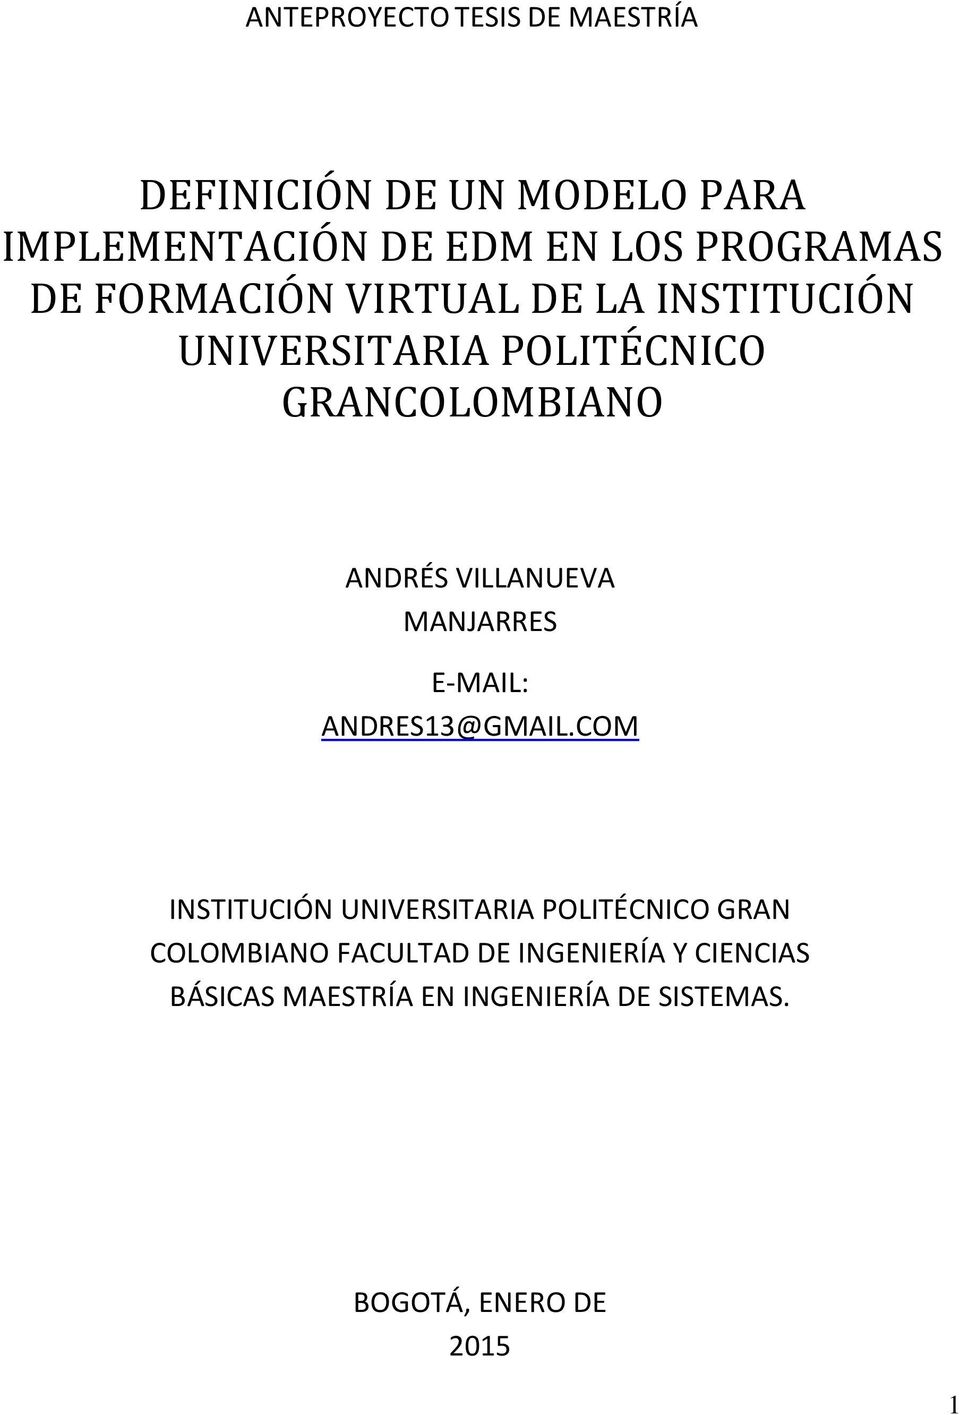 VILLANUEVA MANJARRES E-MAIL: ANDRES13@GMAIL.